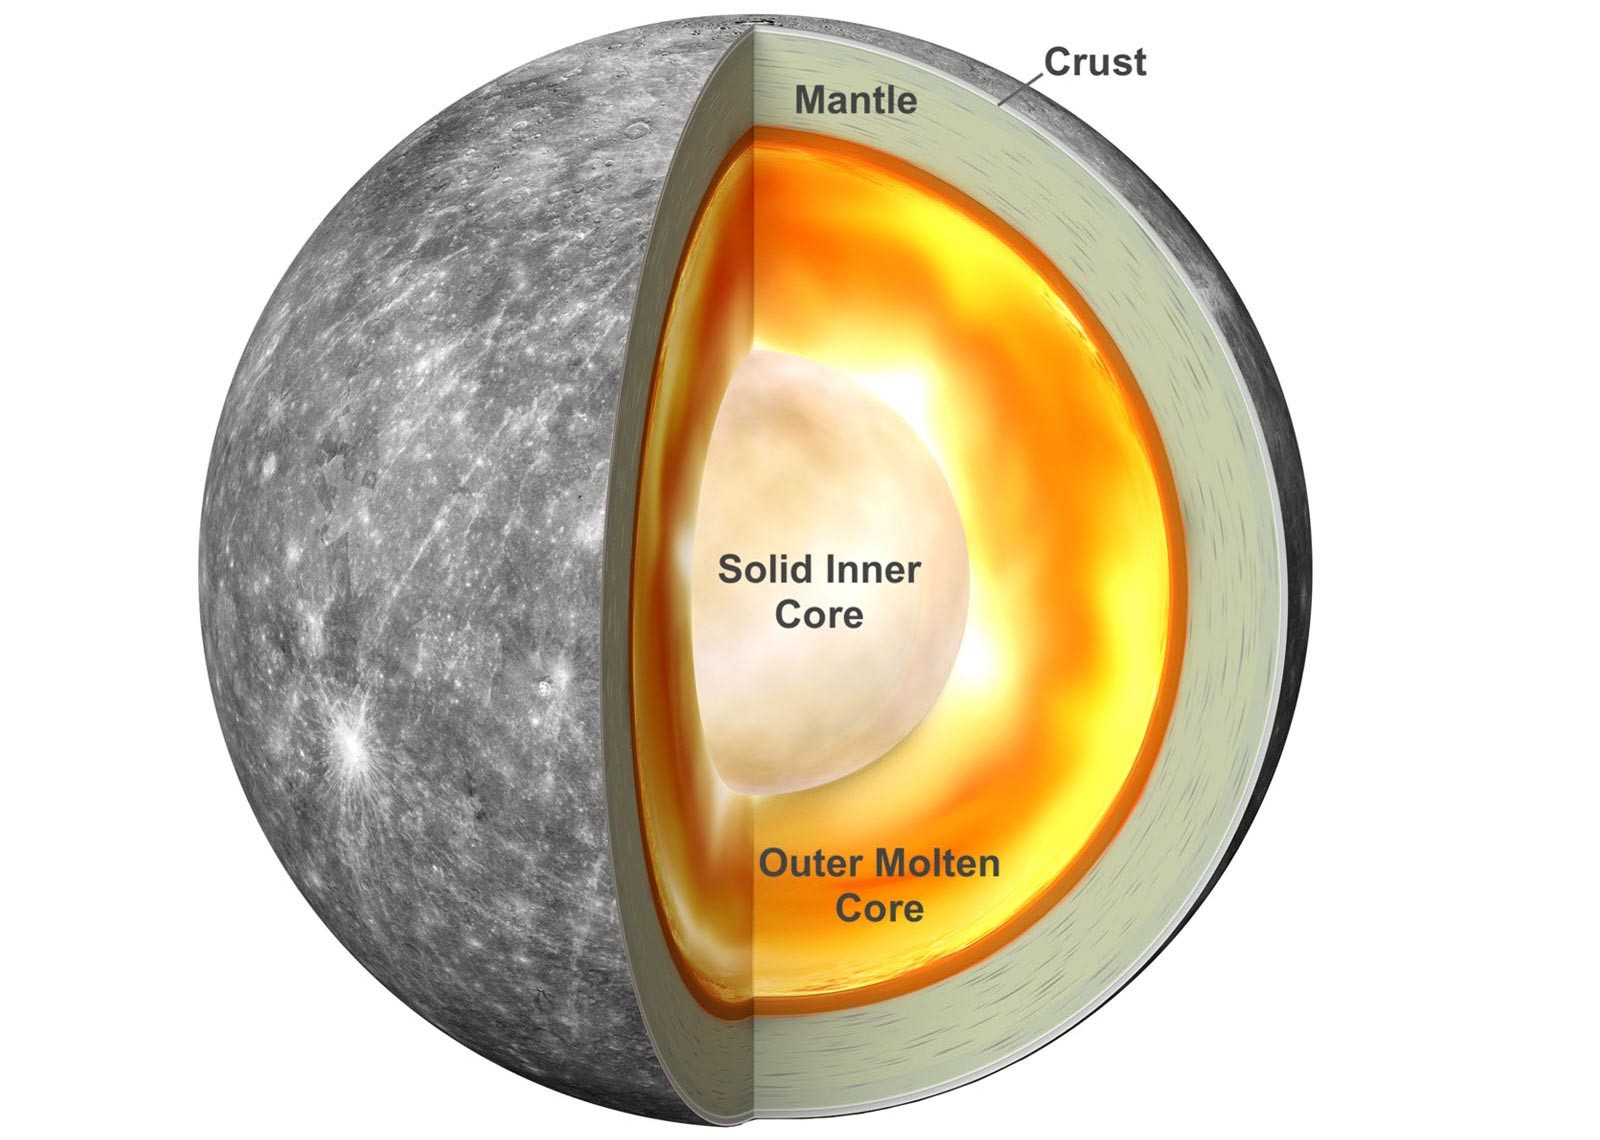 Sao Thủy có lõi sắt khổng lồ dù kích thước nhỏ nhất hệ mặt trời